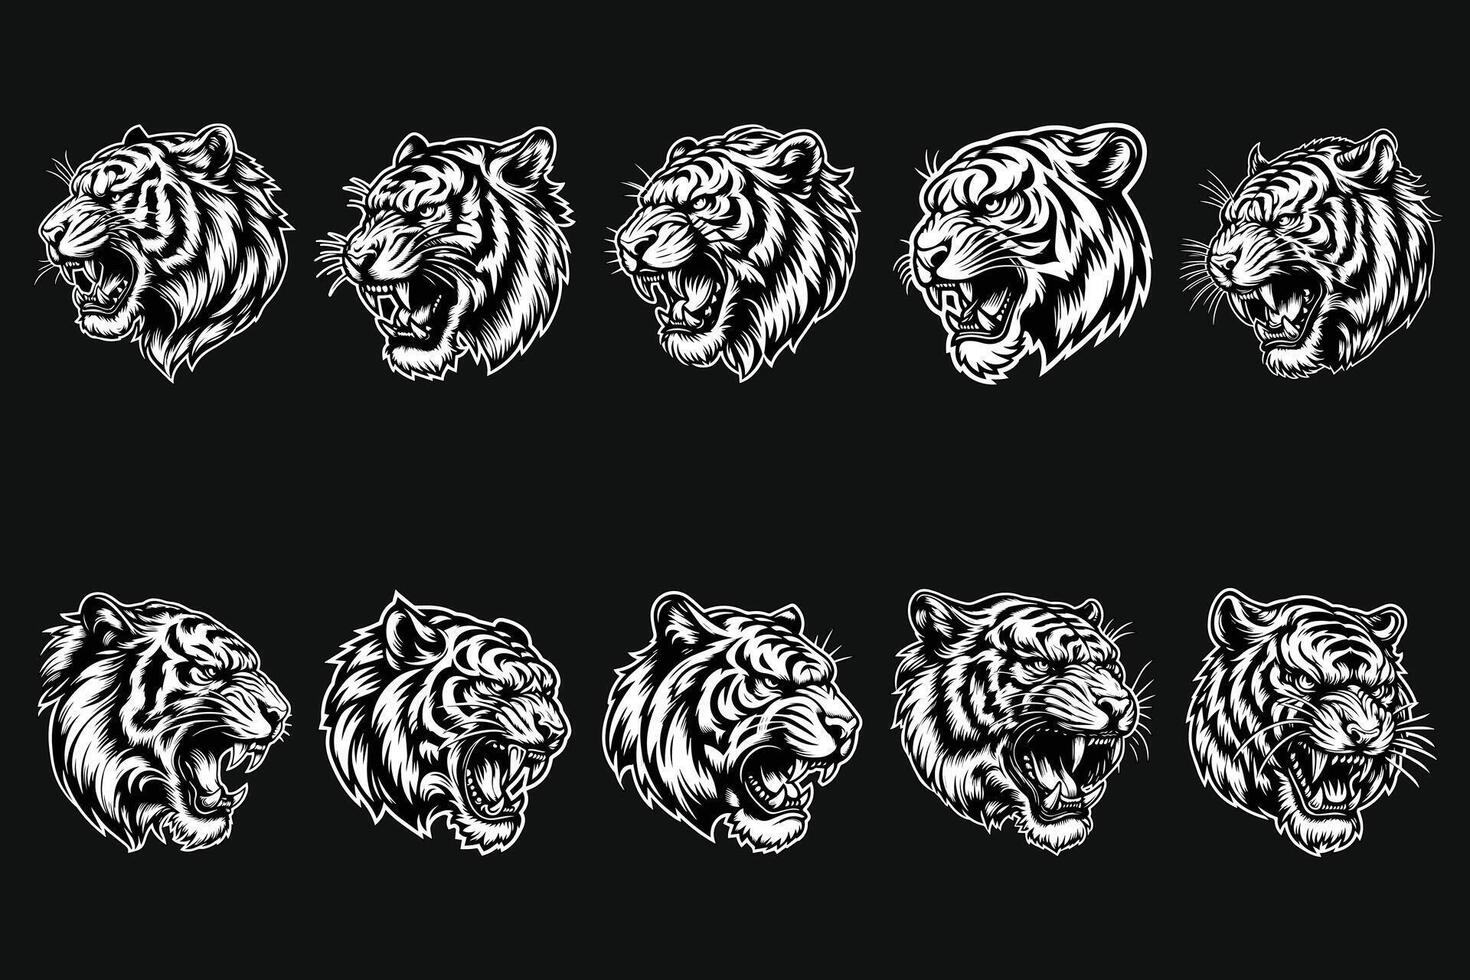 oscuro Arte enojado bestia Tigre cabeza negro y blanco ilustración vector